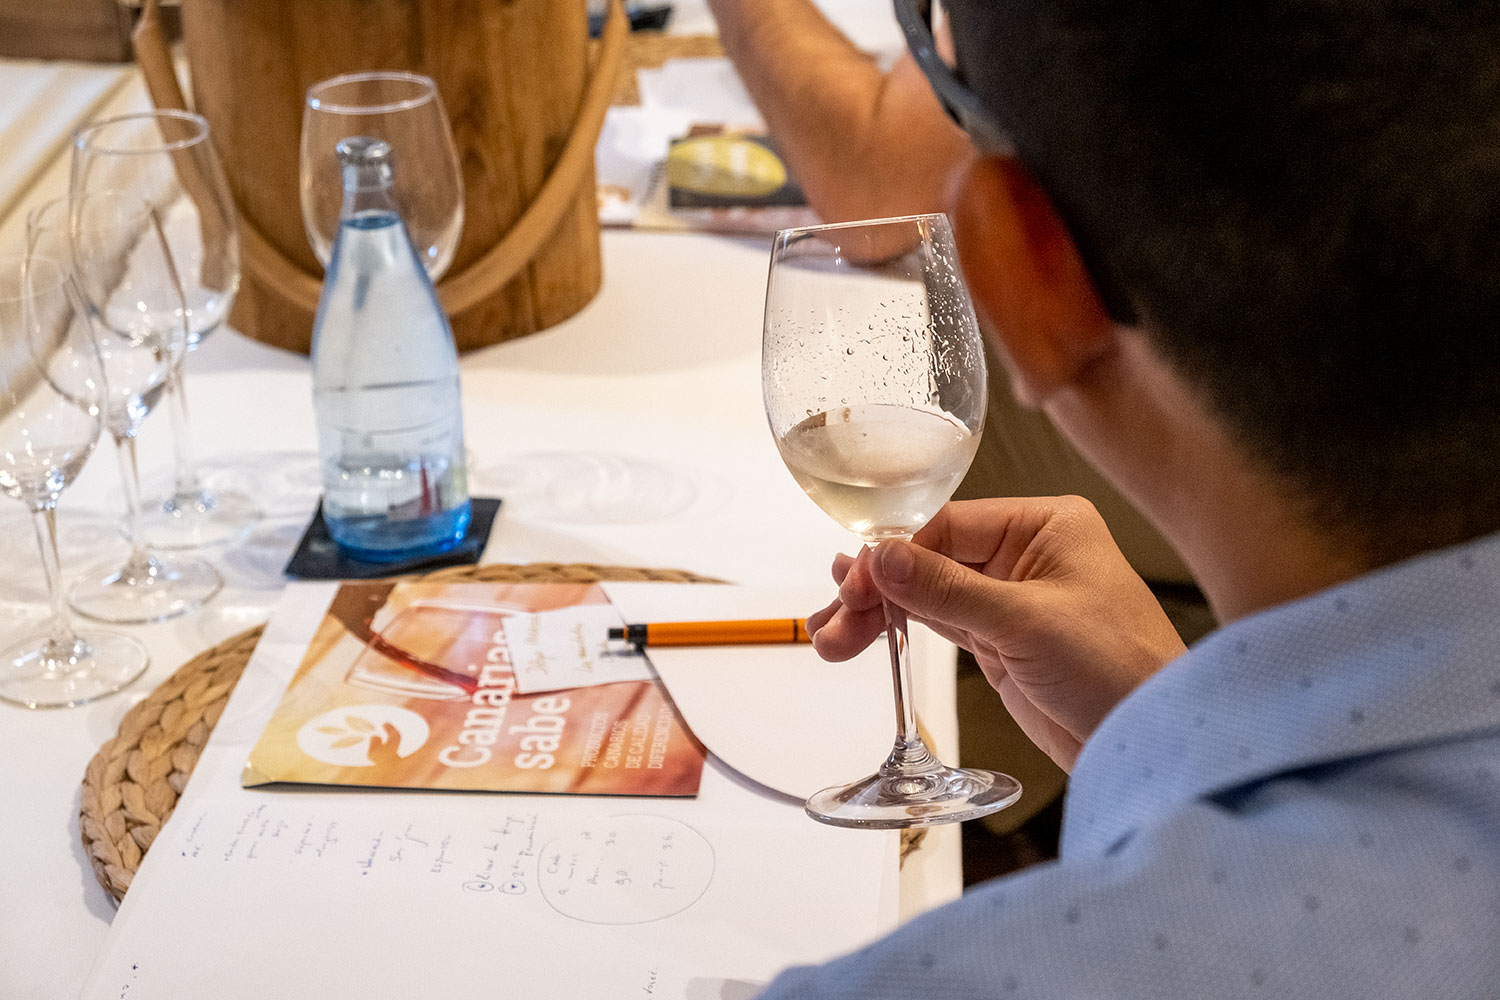 El Gobierno de Canarias pone en marcha un proyecto para introducir vinos volcánicos en los restaurantes de las islas